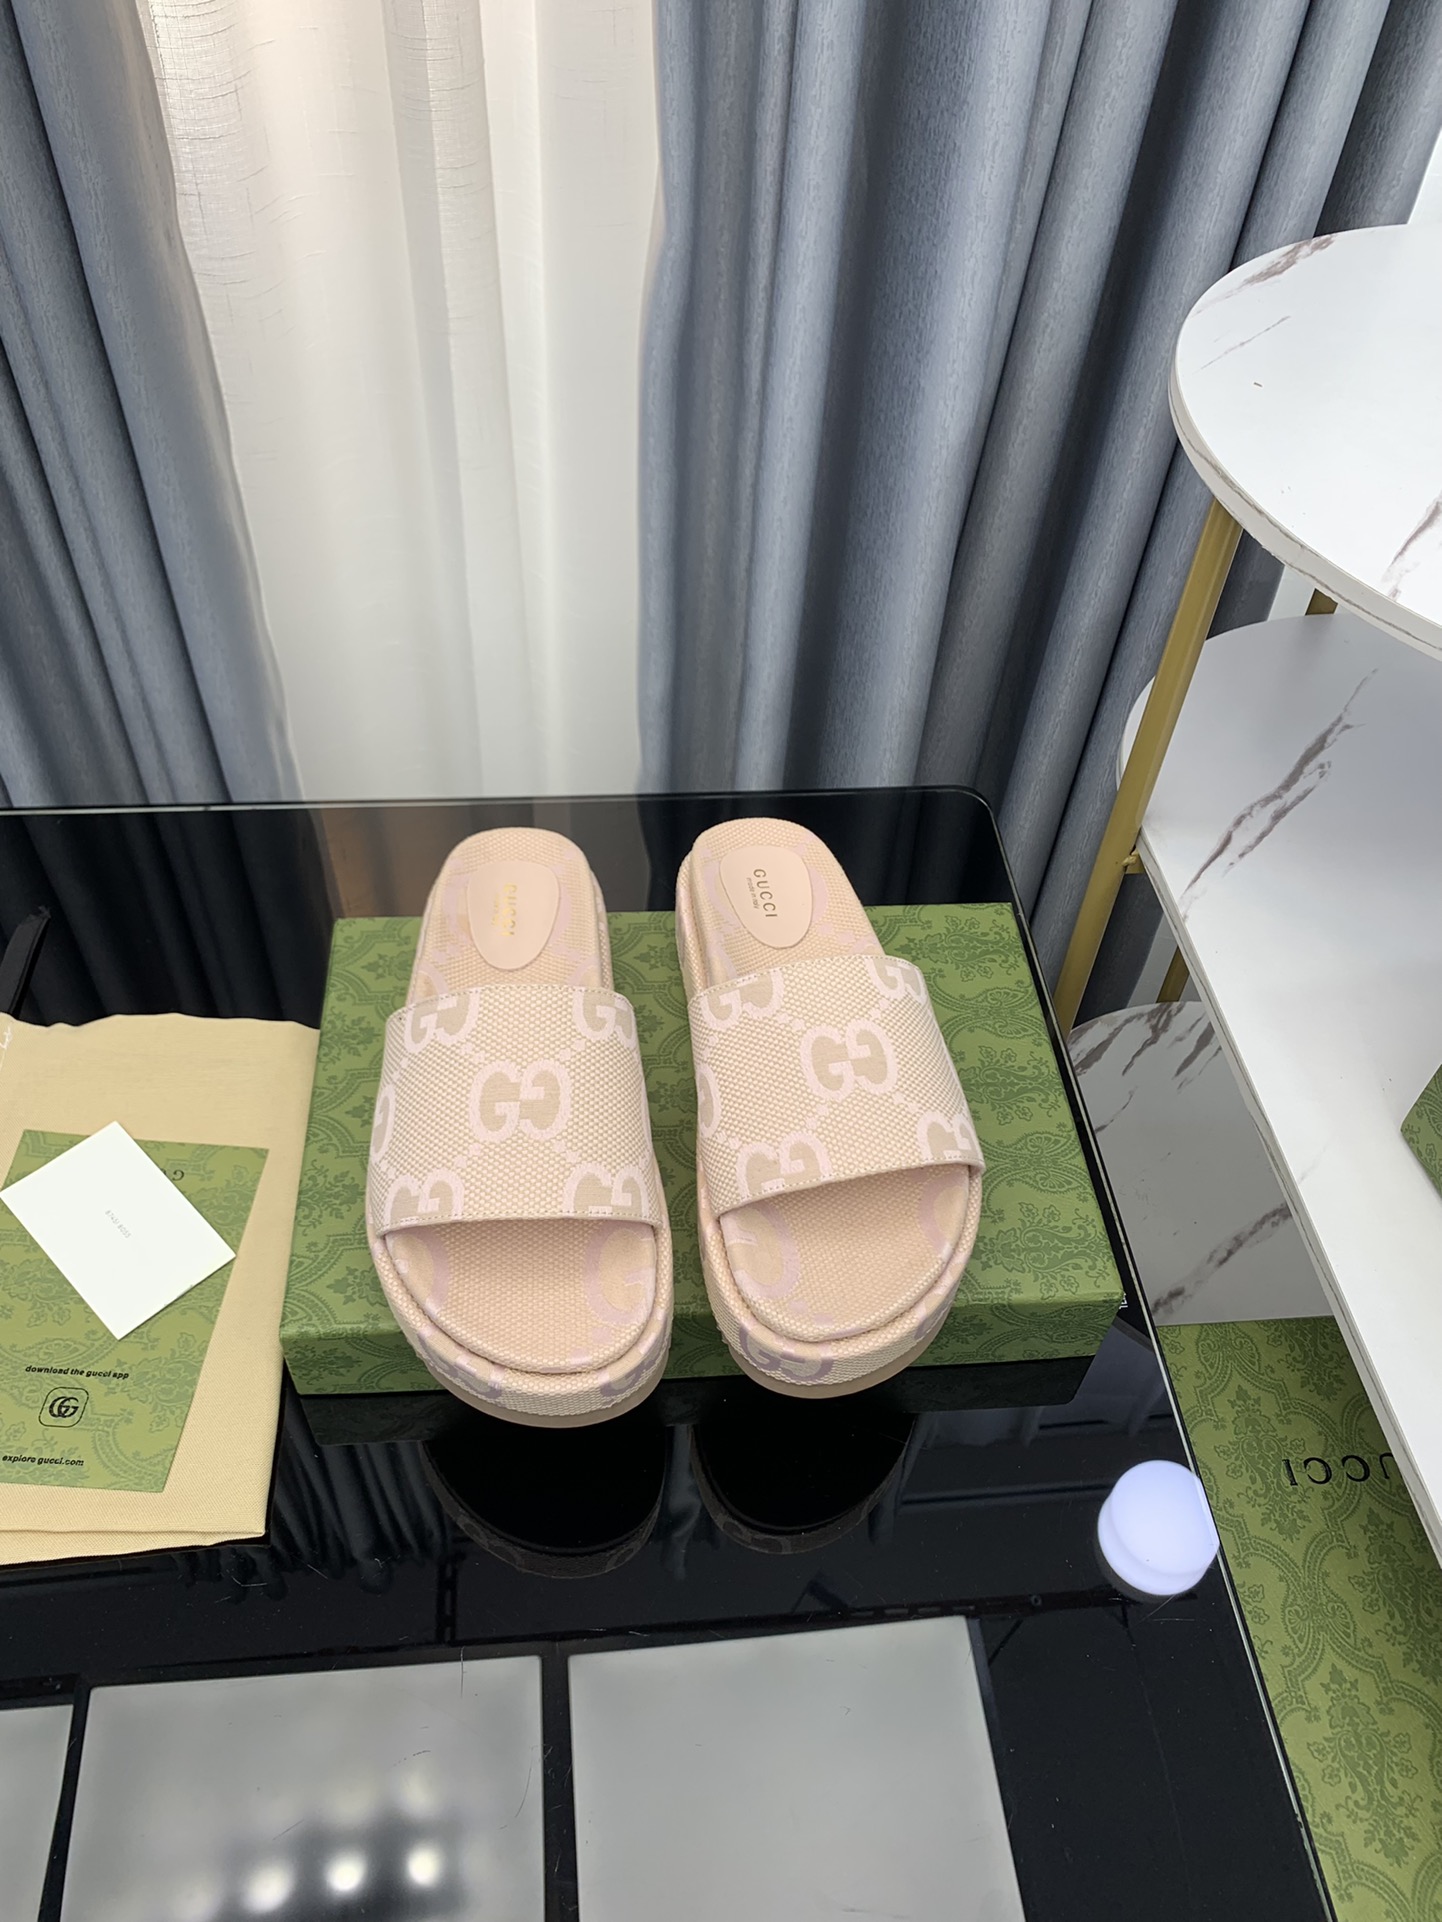 Gucci Schuhe Sandalen Beige Weiß Frauen Leinwand Kautschuk Schaffell Sommerkollektion Vintage